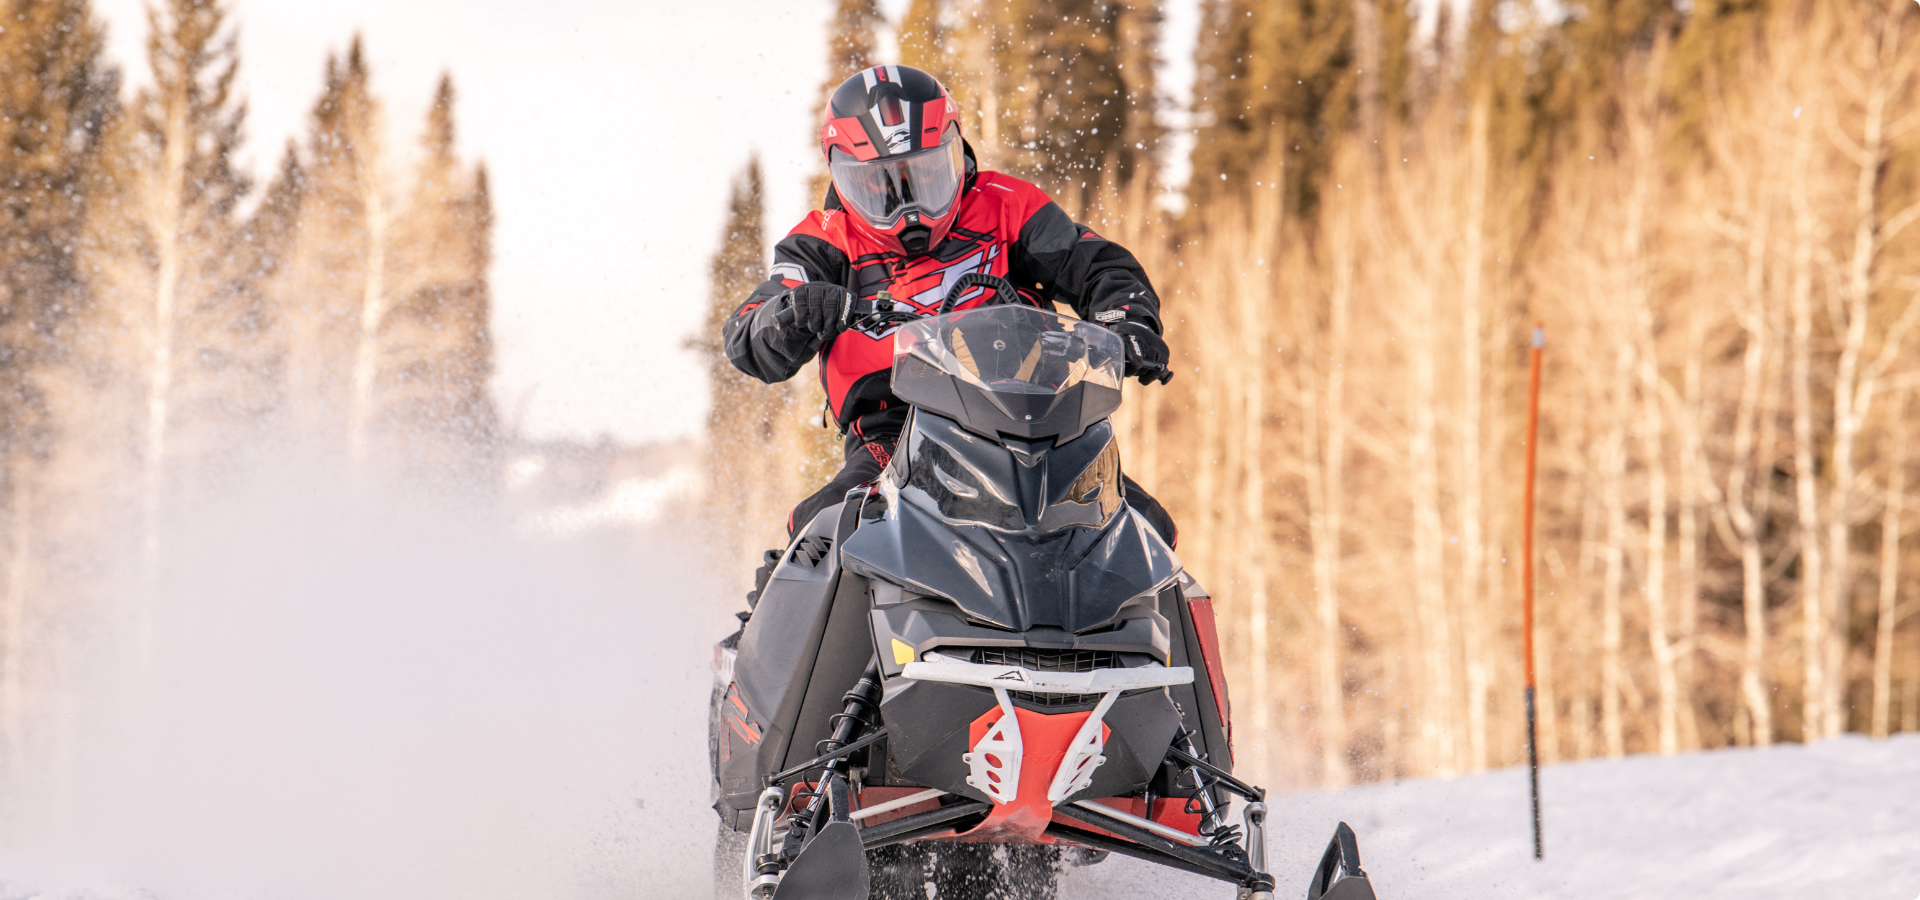 A helmeted man drives a red snowmobile through snow.